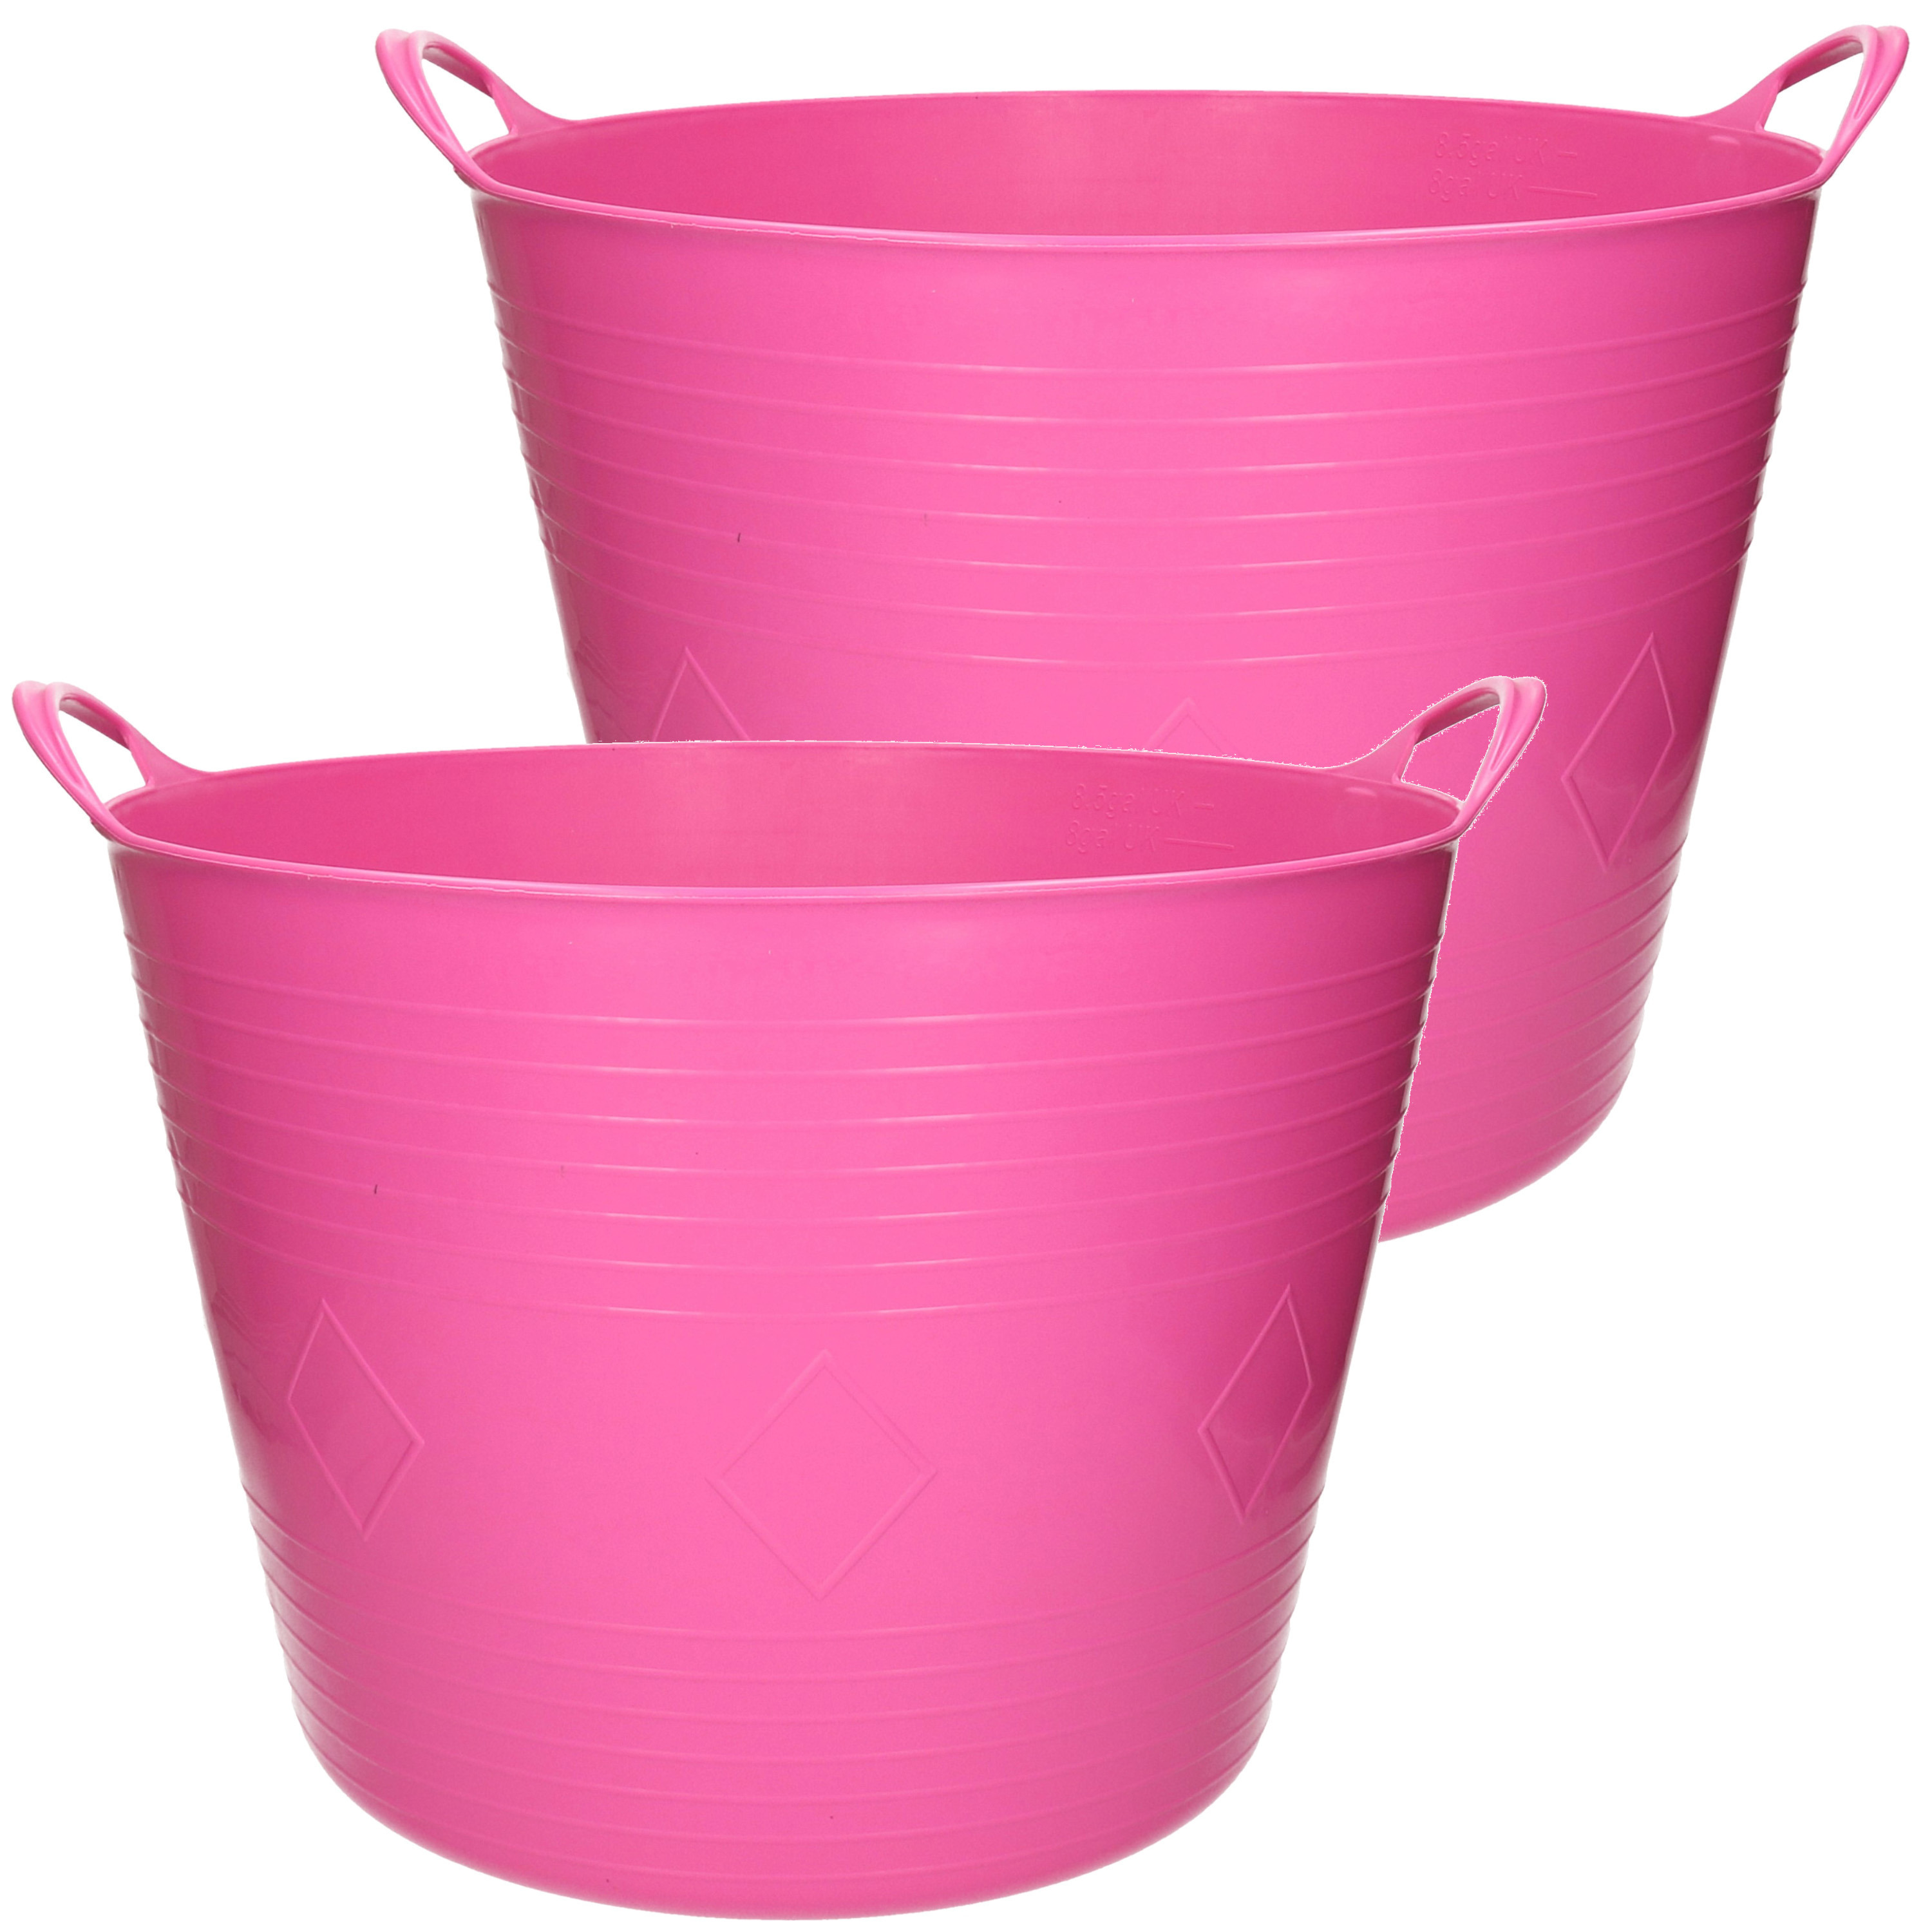 2x stuks flexibele kuip emmer-wasmand rond roze 43 liter